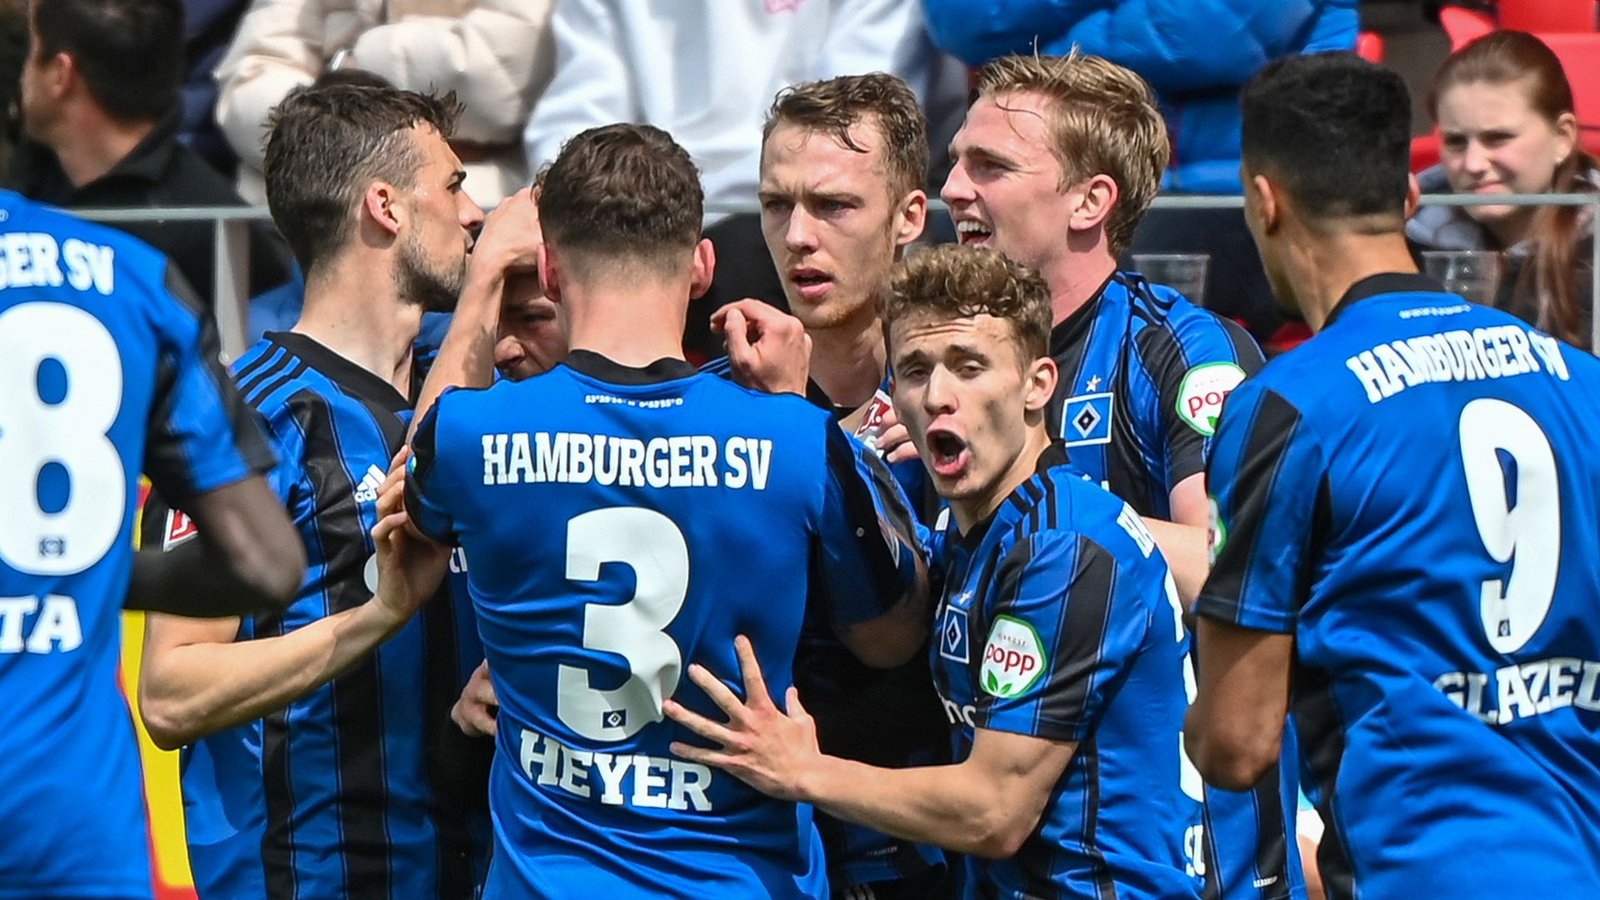 Der HSV konnte in Regensburg wichtige drei Punkte einfahren und kann sich weiterhin Hoffnungen auf den Aufstieg machen.Foto: Armin Weigel/dpa